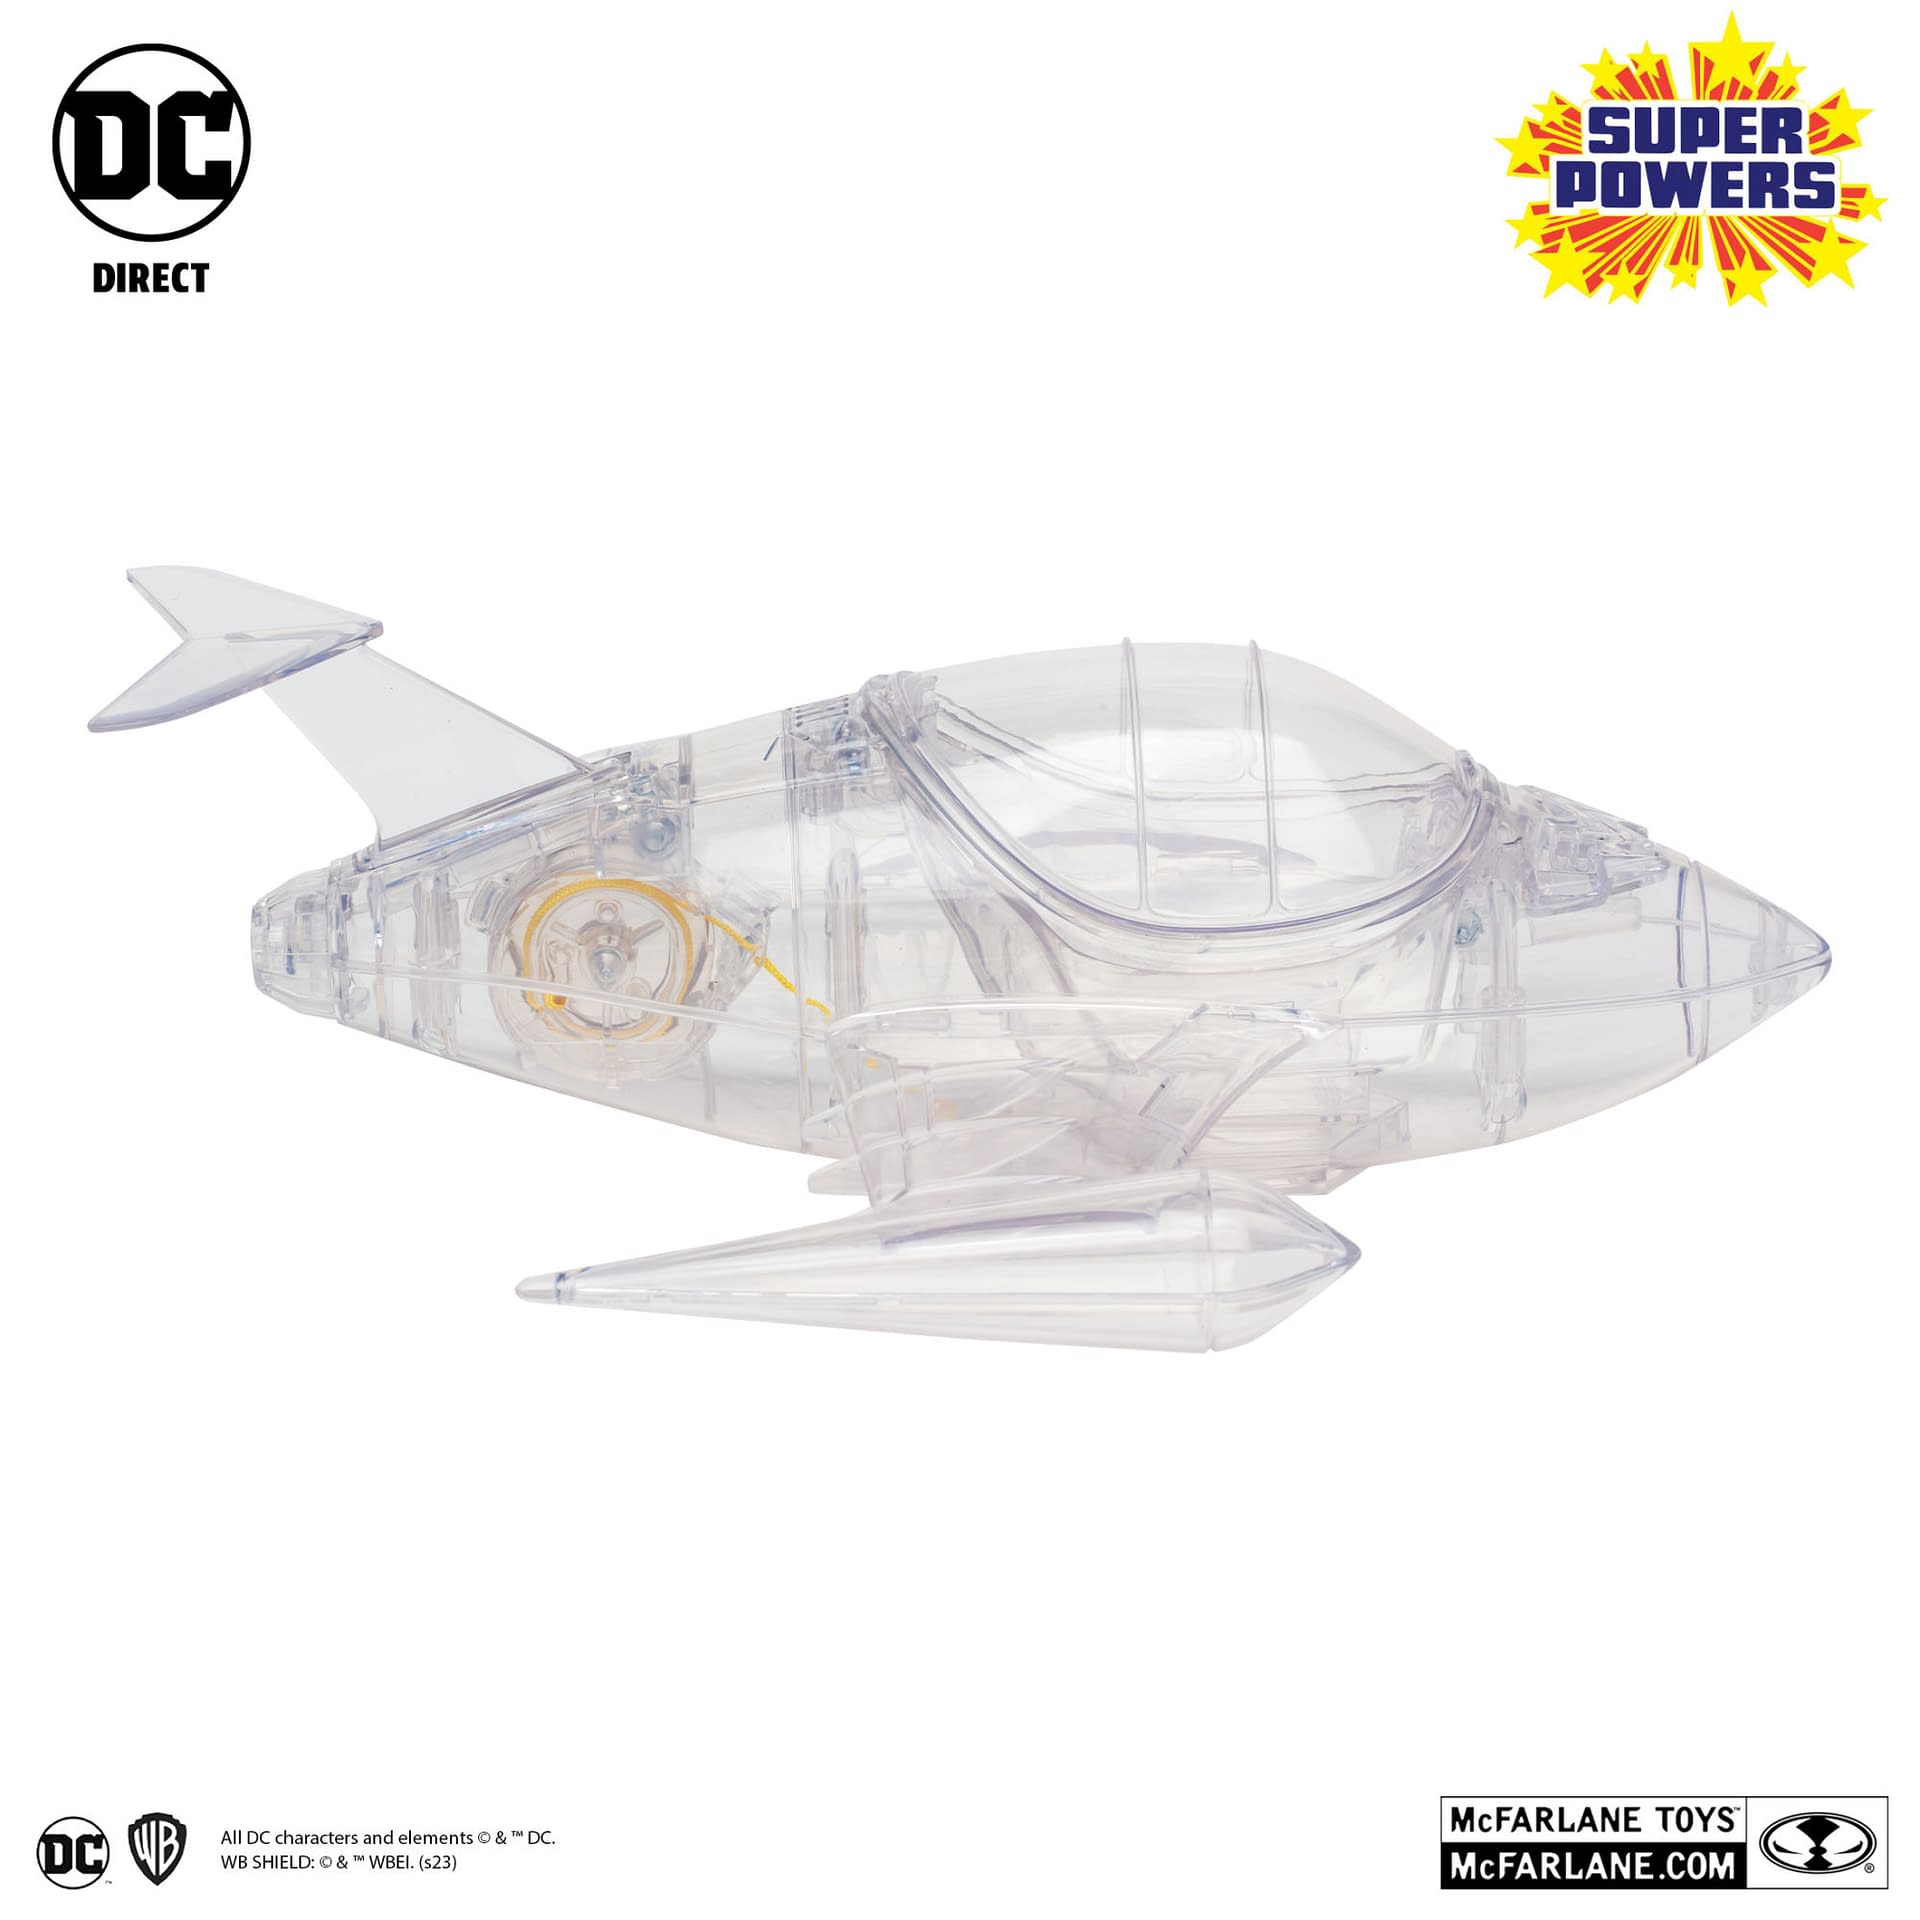 McFarlane Toys Unveils DC Comics Super Powers Wave 4 Retro Figures